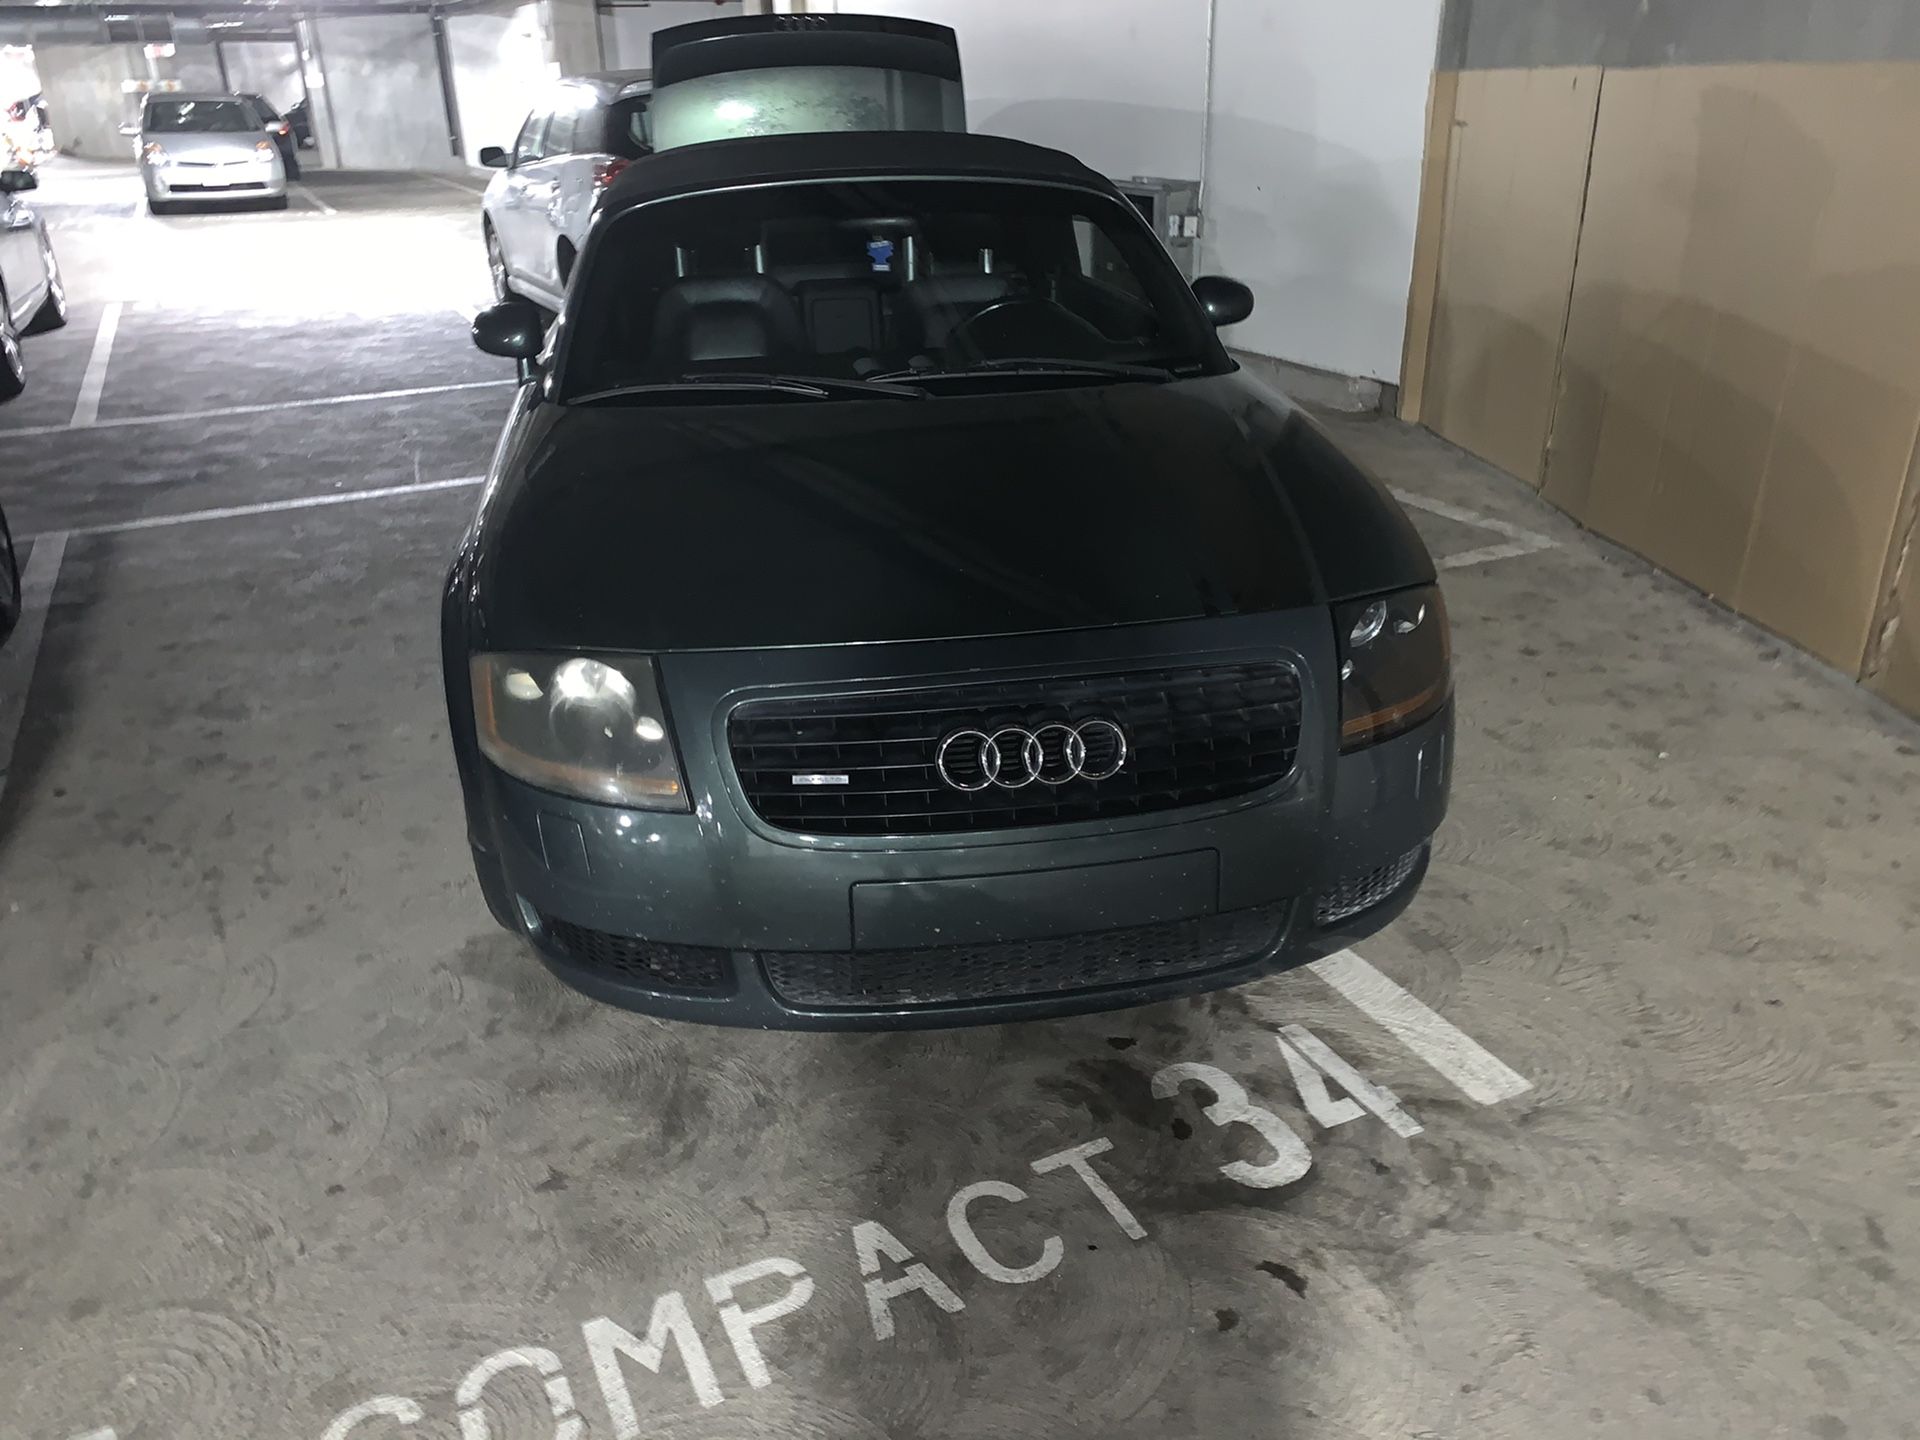 2001 Audi A4 Avant